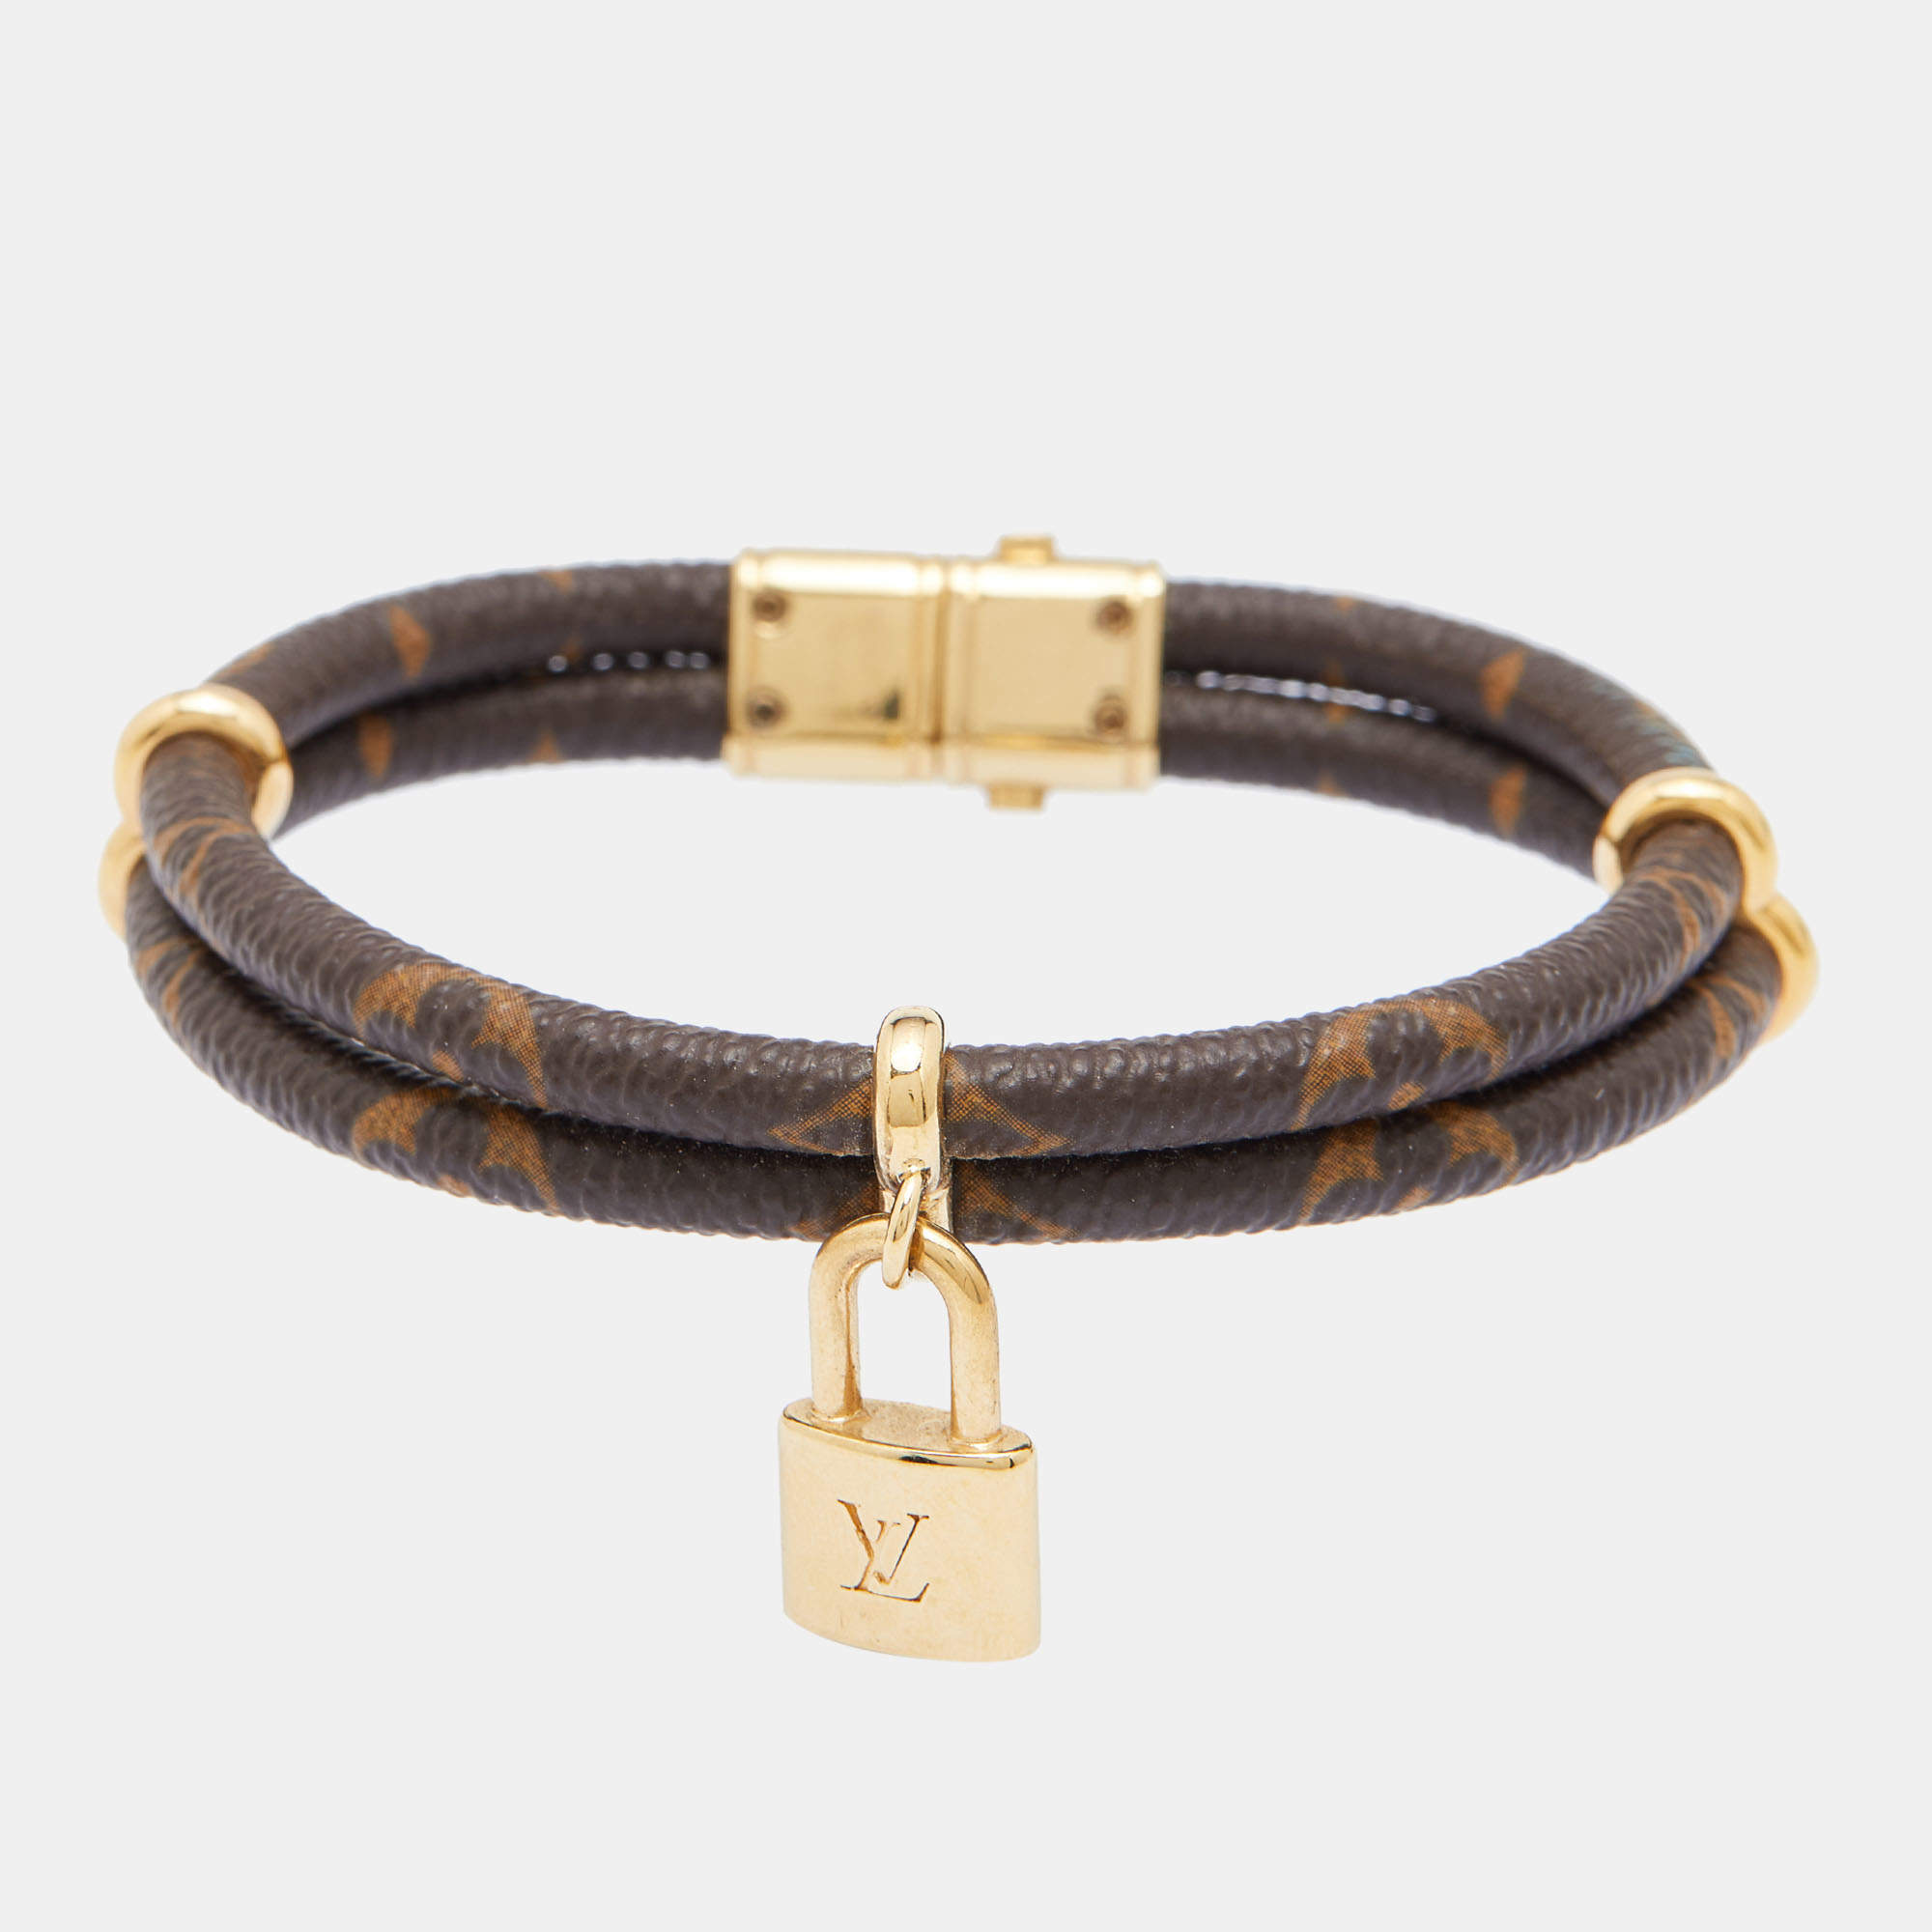 Authentic Louis Vuitton Leather Monogram LV Tag Bracelet 19cm